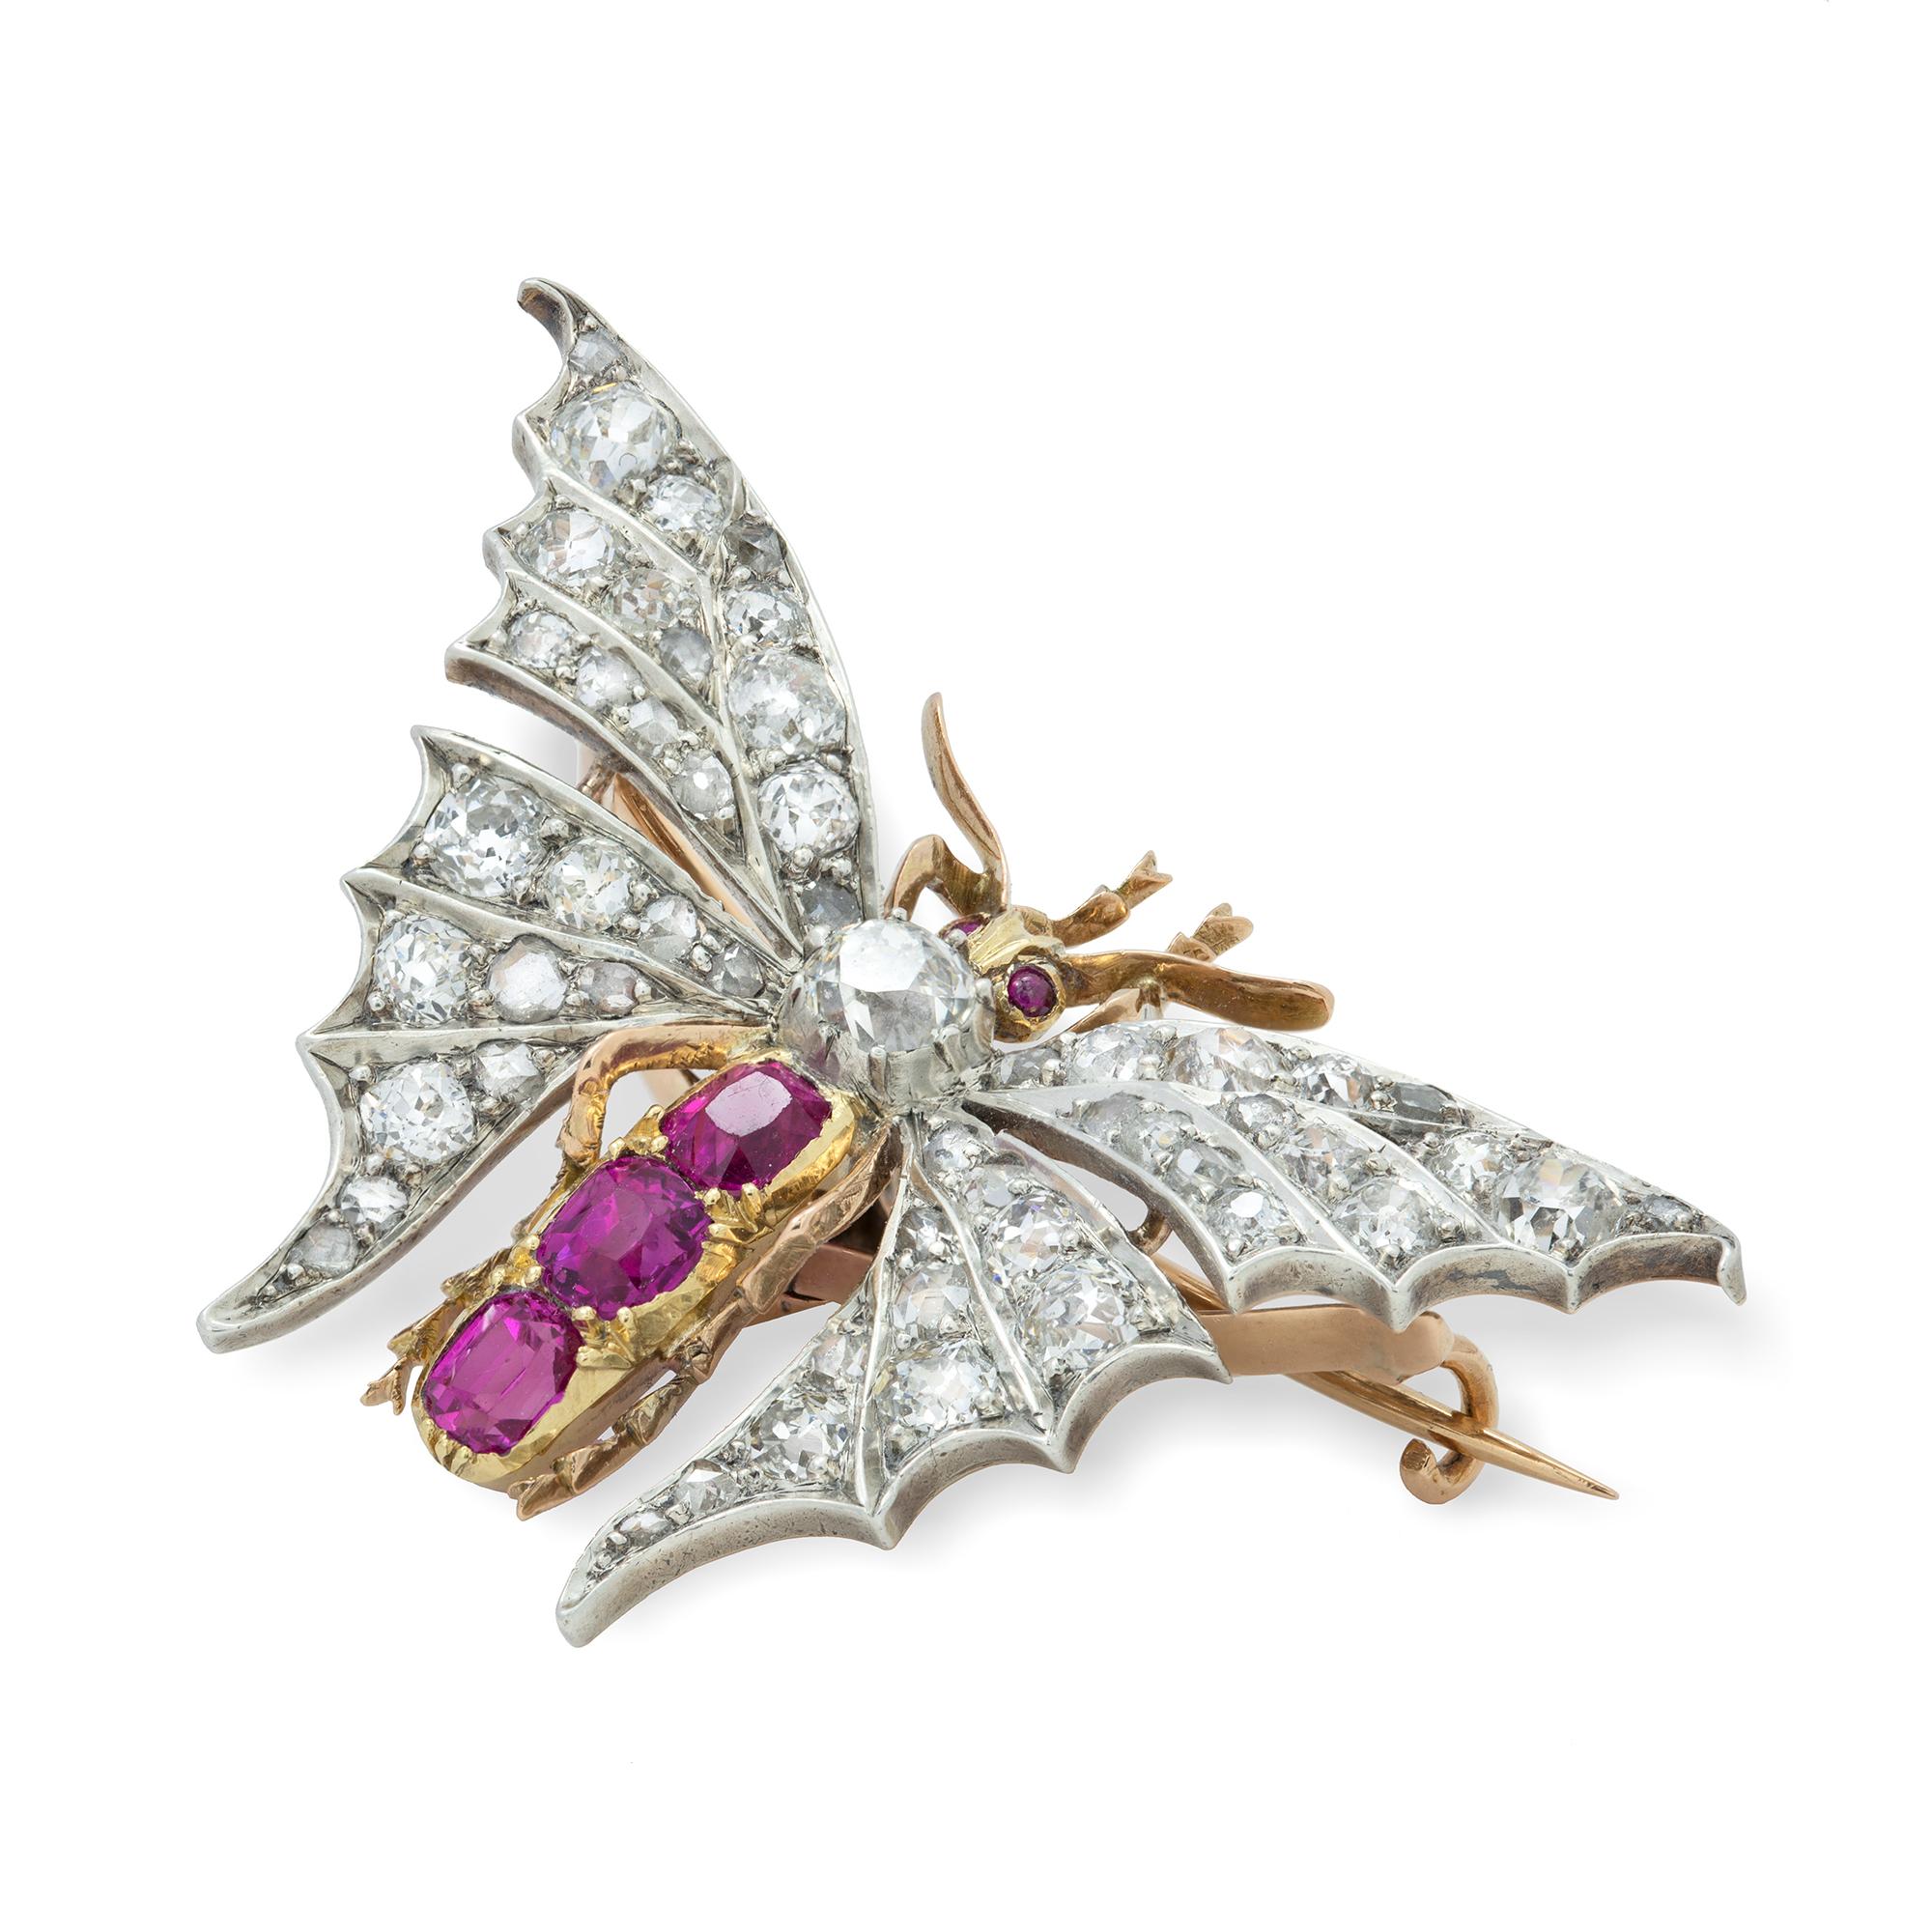 Eine spätviktorianische birmanische Schmetterlingsbrosche mit Rubinen und Diamanten, der Thorax und die Flügel besetzt mit alten europäischen Diamanten und Diamanten im Rosenschliff mit einem Gesamtgewicht von ca. 4 Karat, der Bauch und die Augen